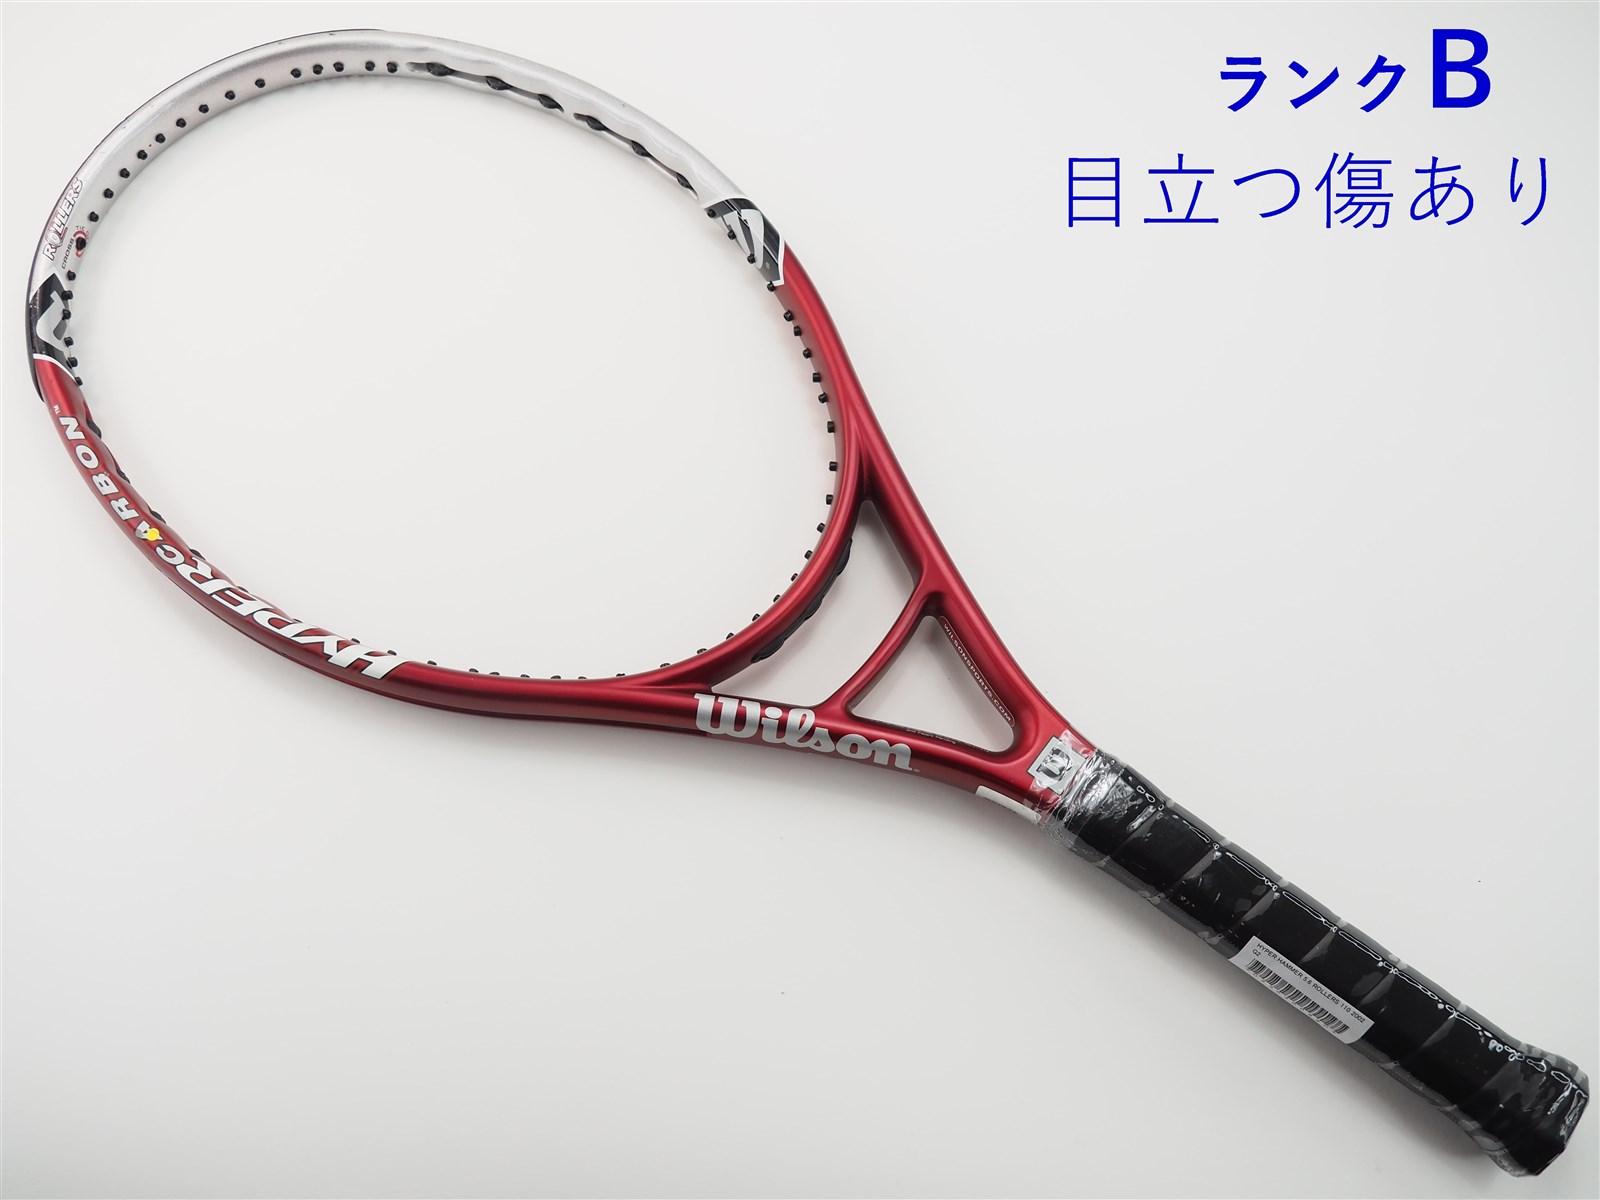 テニスラケット ウィルソンハイパープロスタッフ5.3 105 - ラケット 